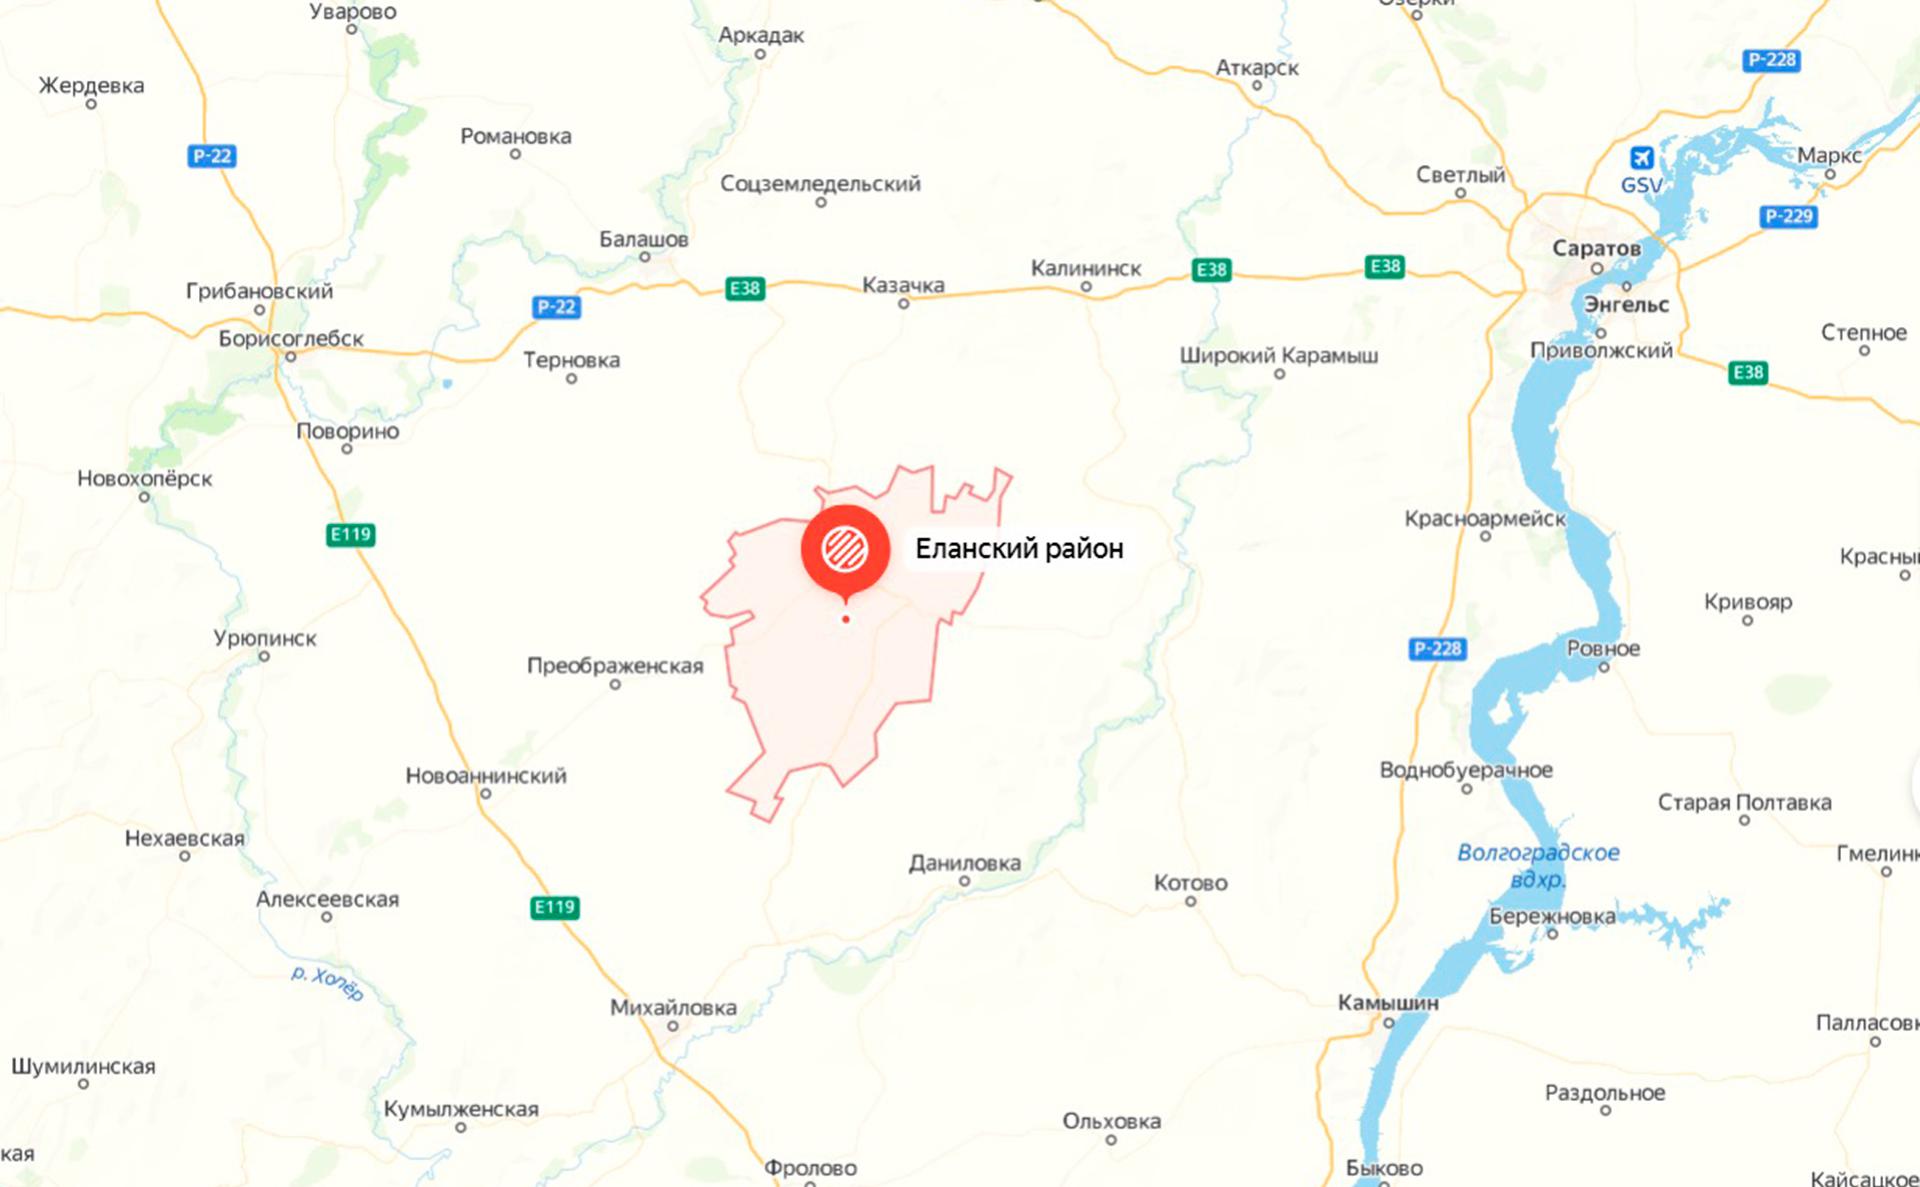 Волгоградские власти сообщили о падении неизвестного объекта в поле"/>













